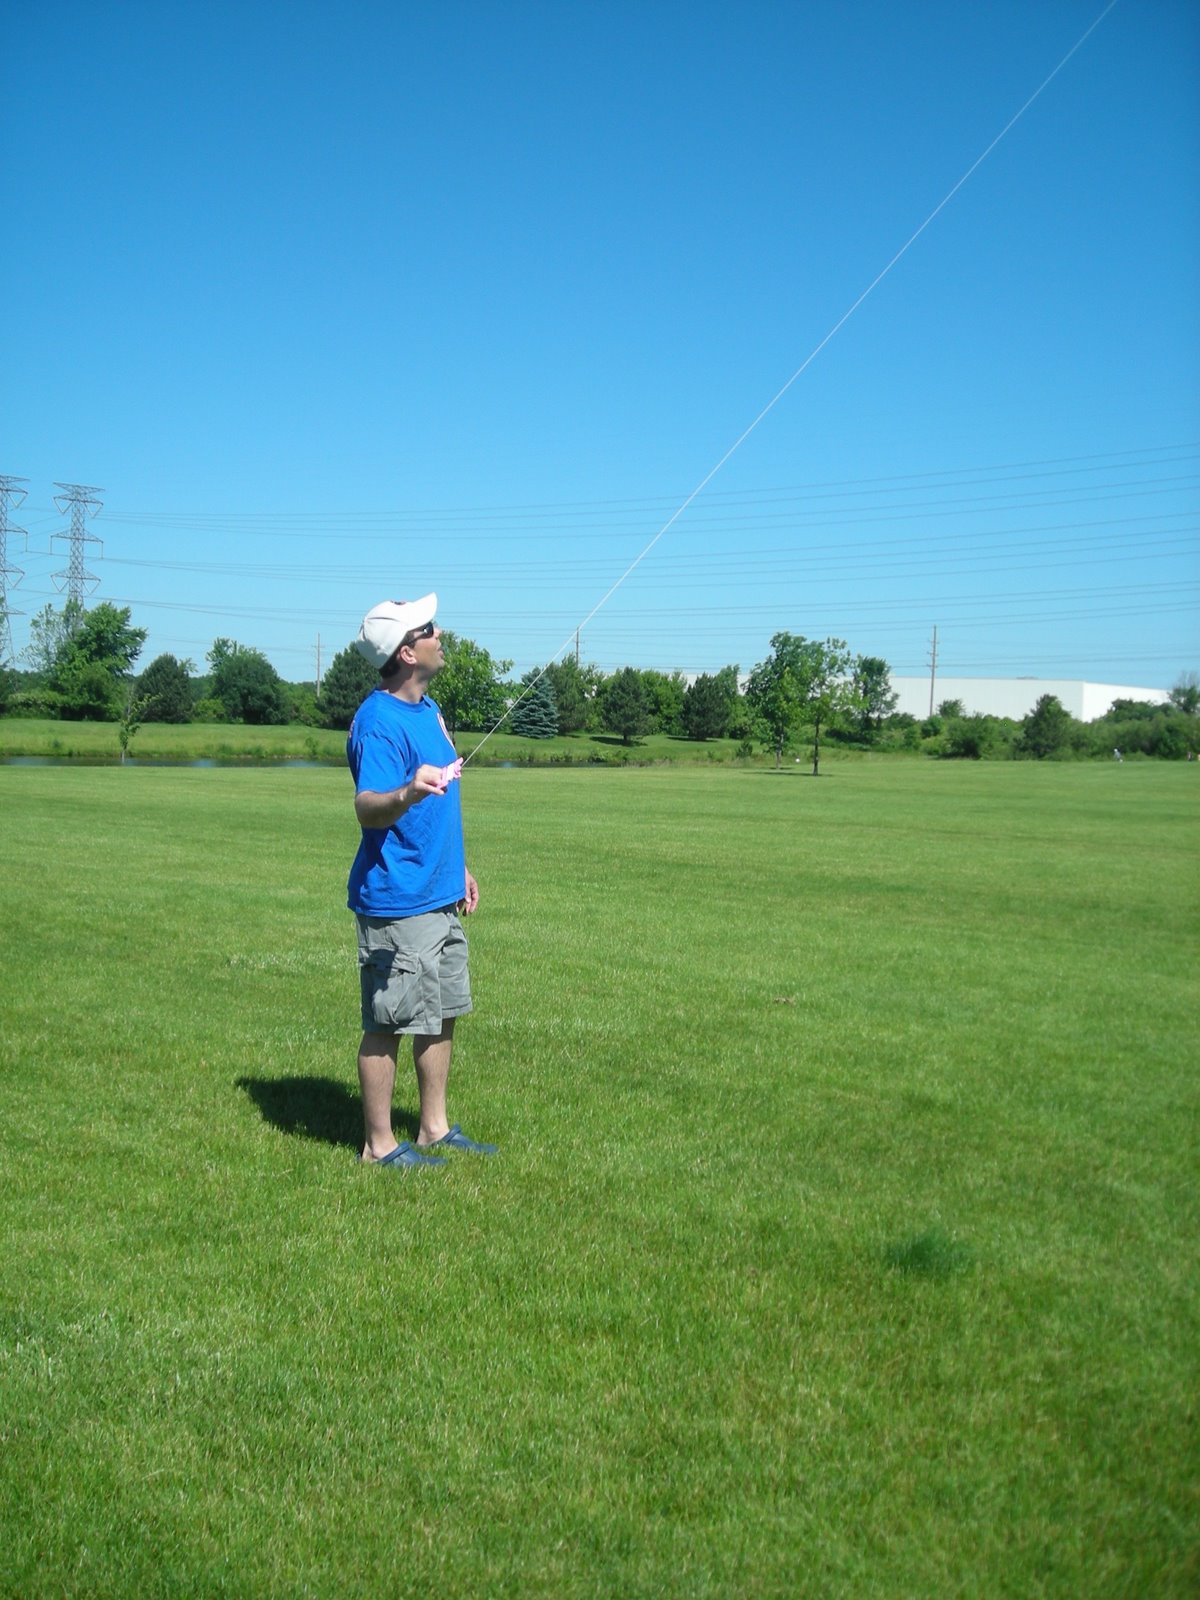 [Daddy+flying+kite.JPG]